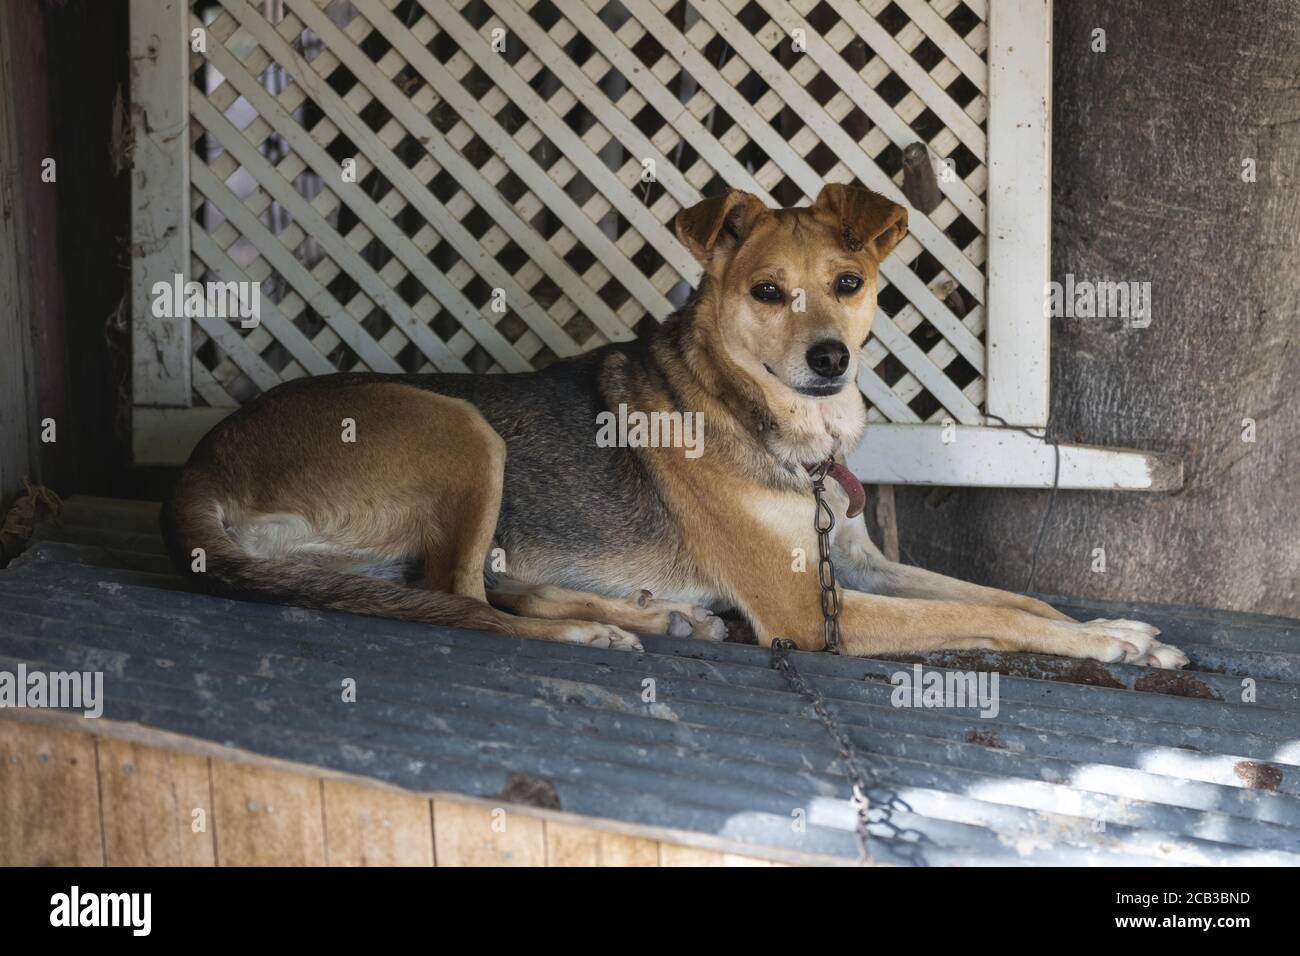 Joli chien brun assis sur le sol avec une chaîne Banque D'Images